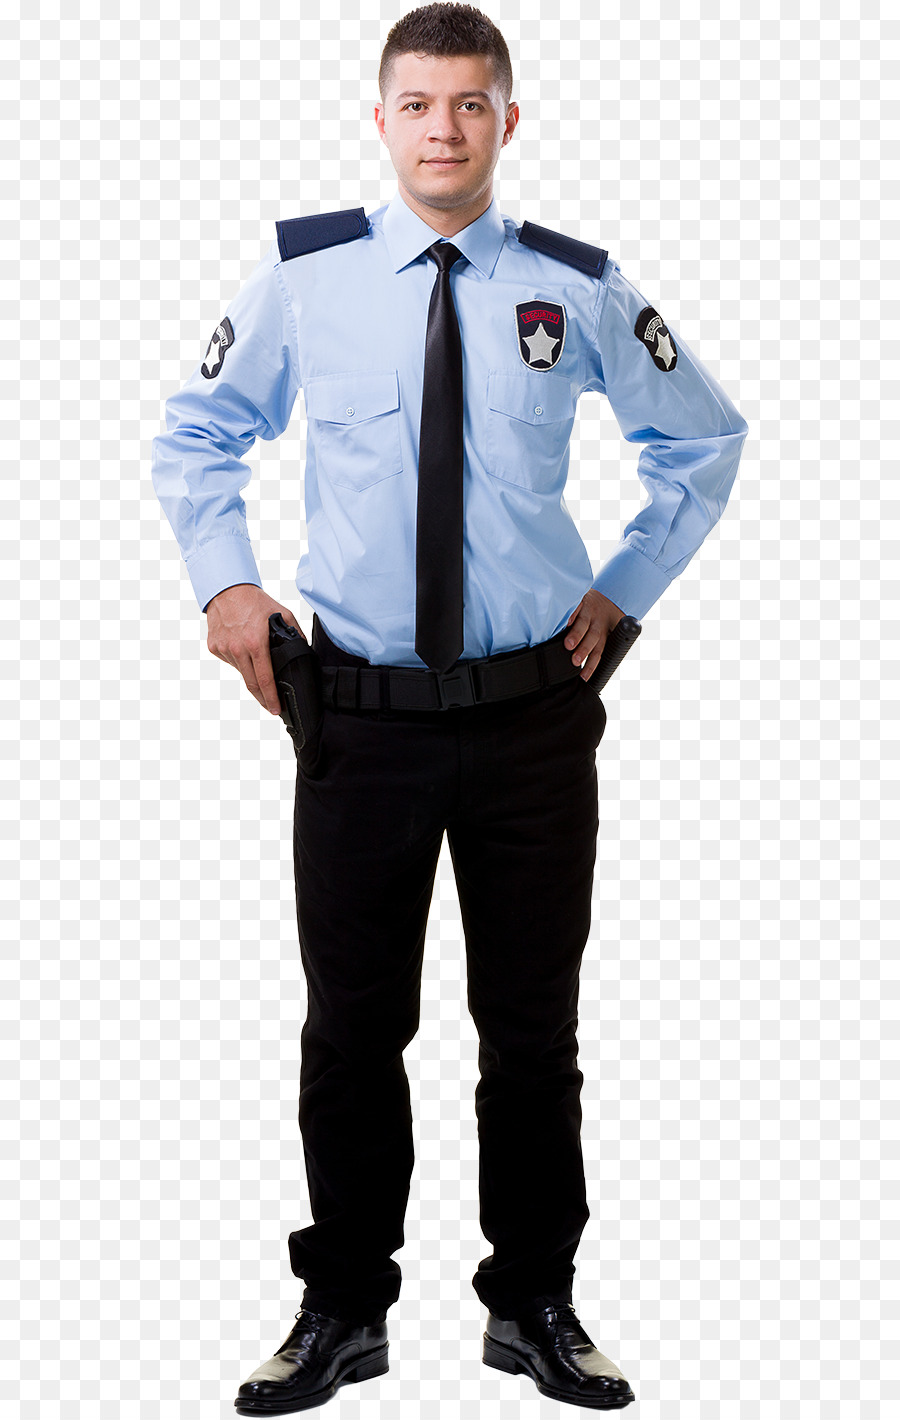 Funzionario di polizia, guardia di Sicurezza Uniforme - la polizia